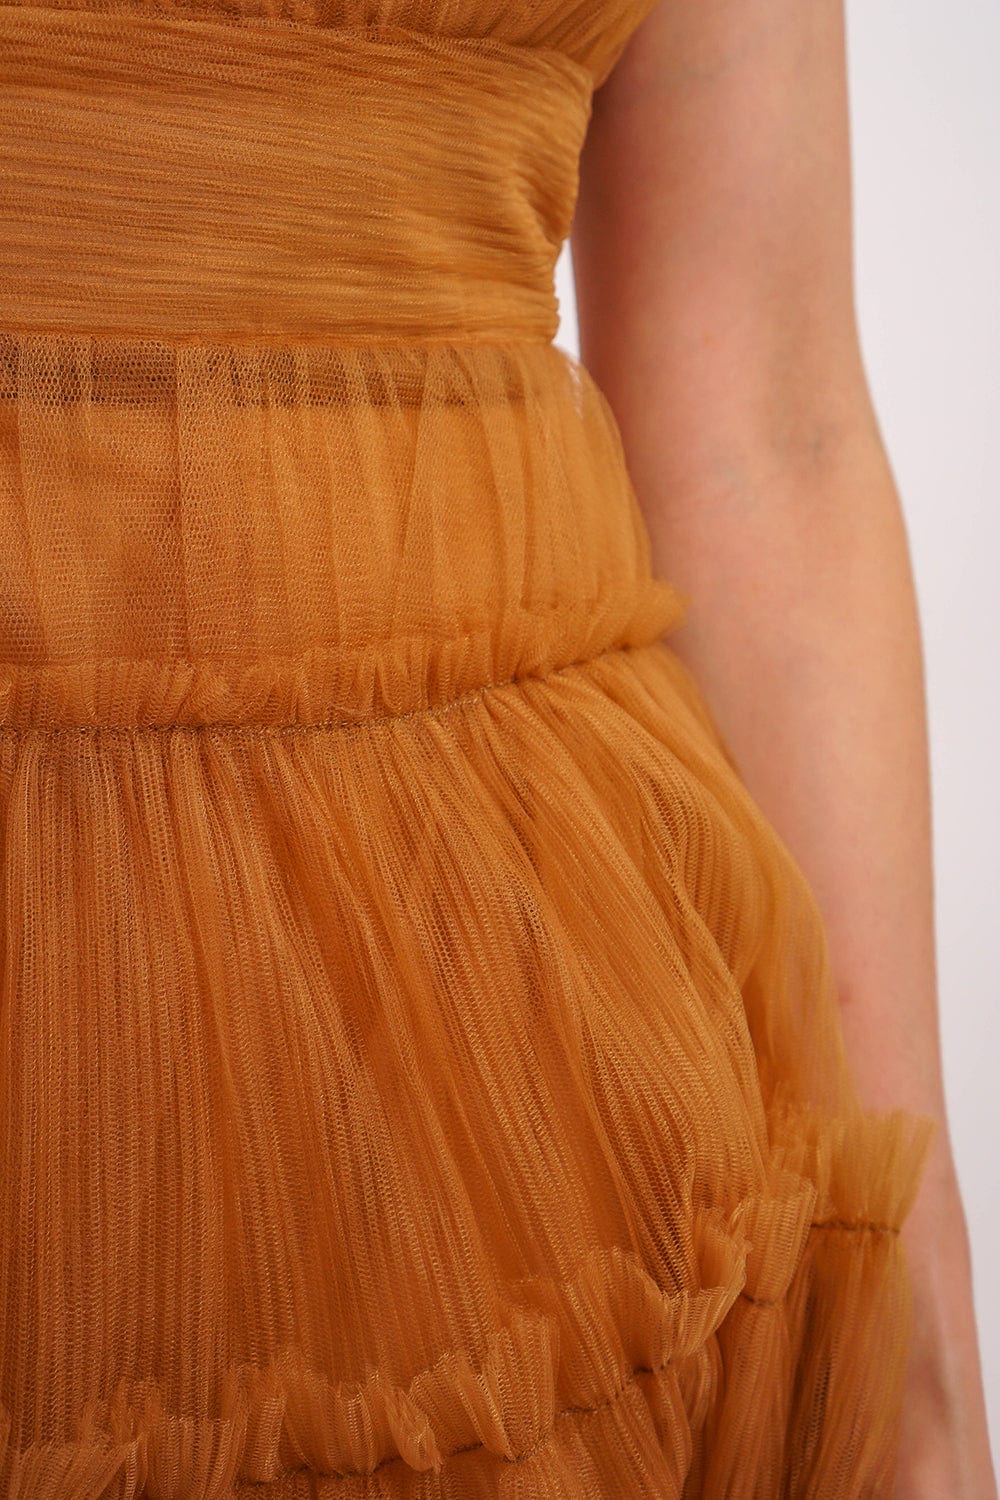 DCD DRESSES Almond Strapless Tulle Dress